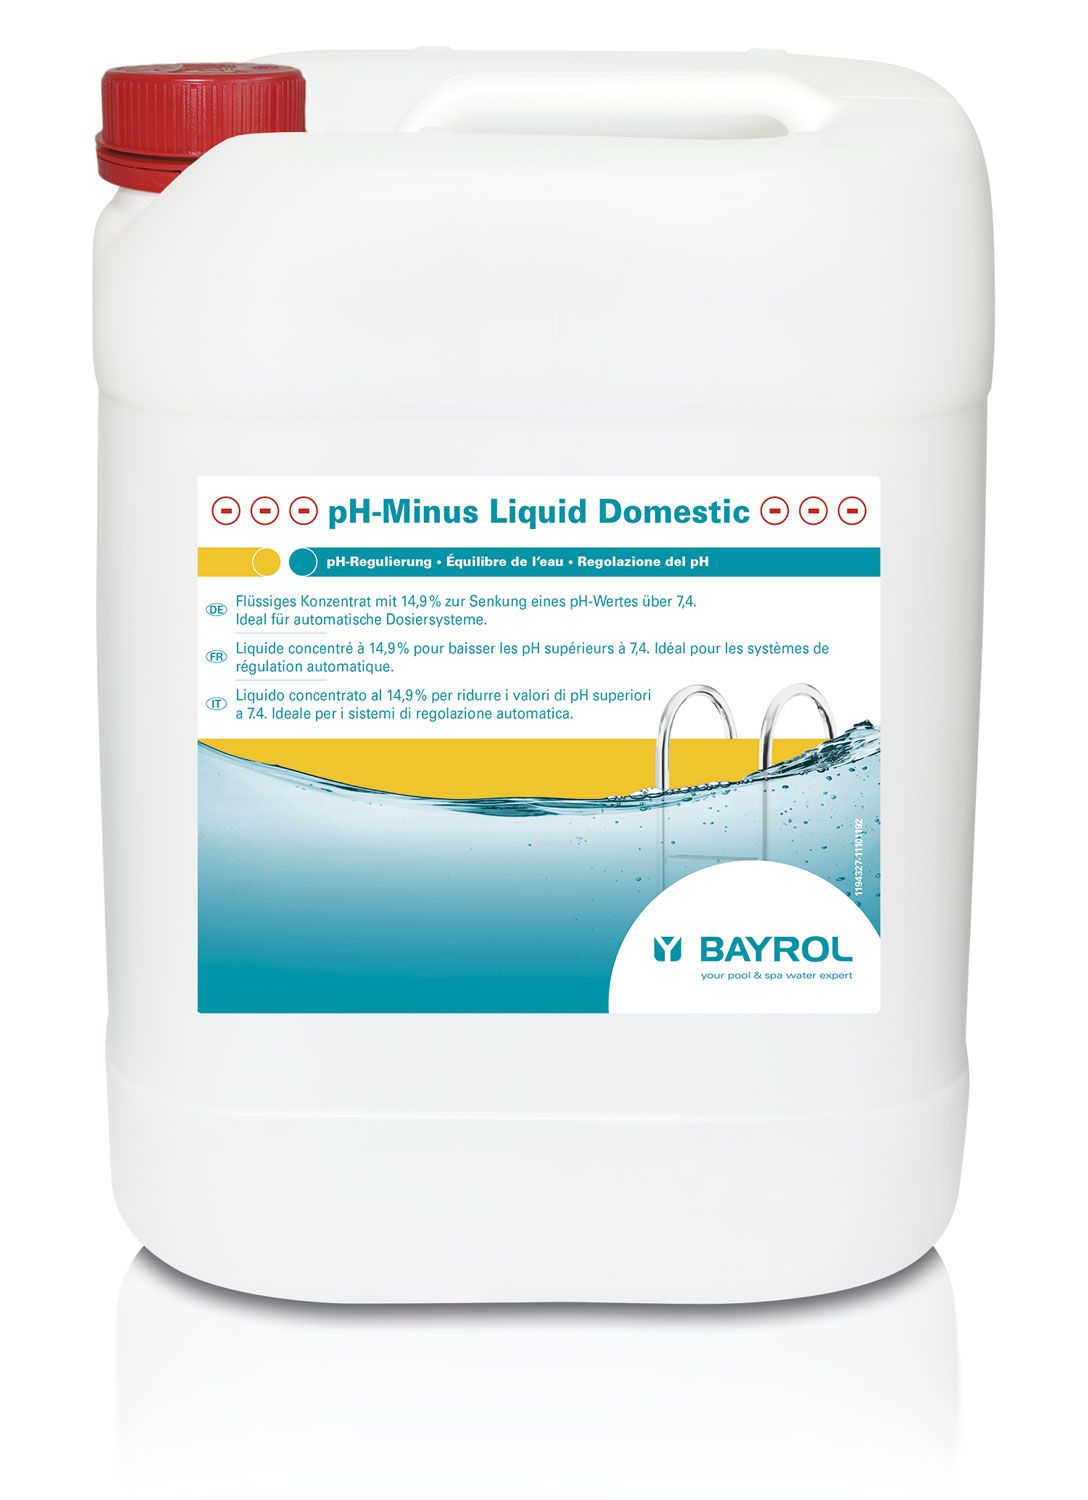 pH-Minus Liquid Domestic 20L pour régulation automatique